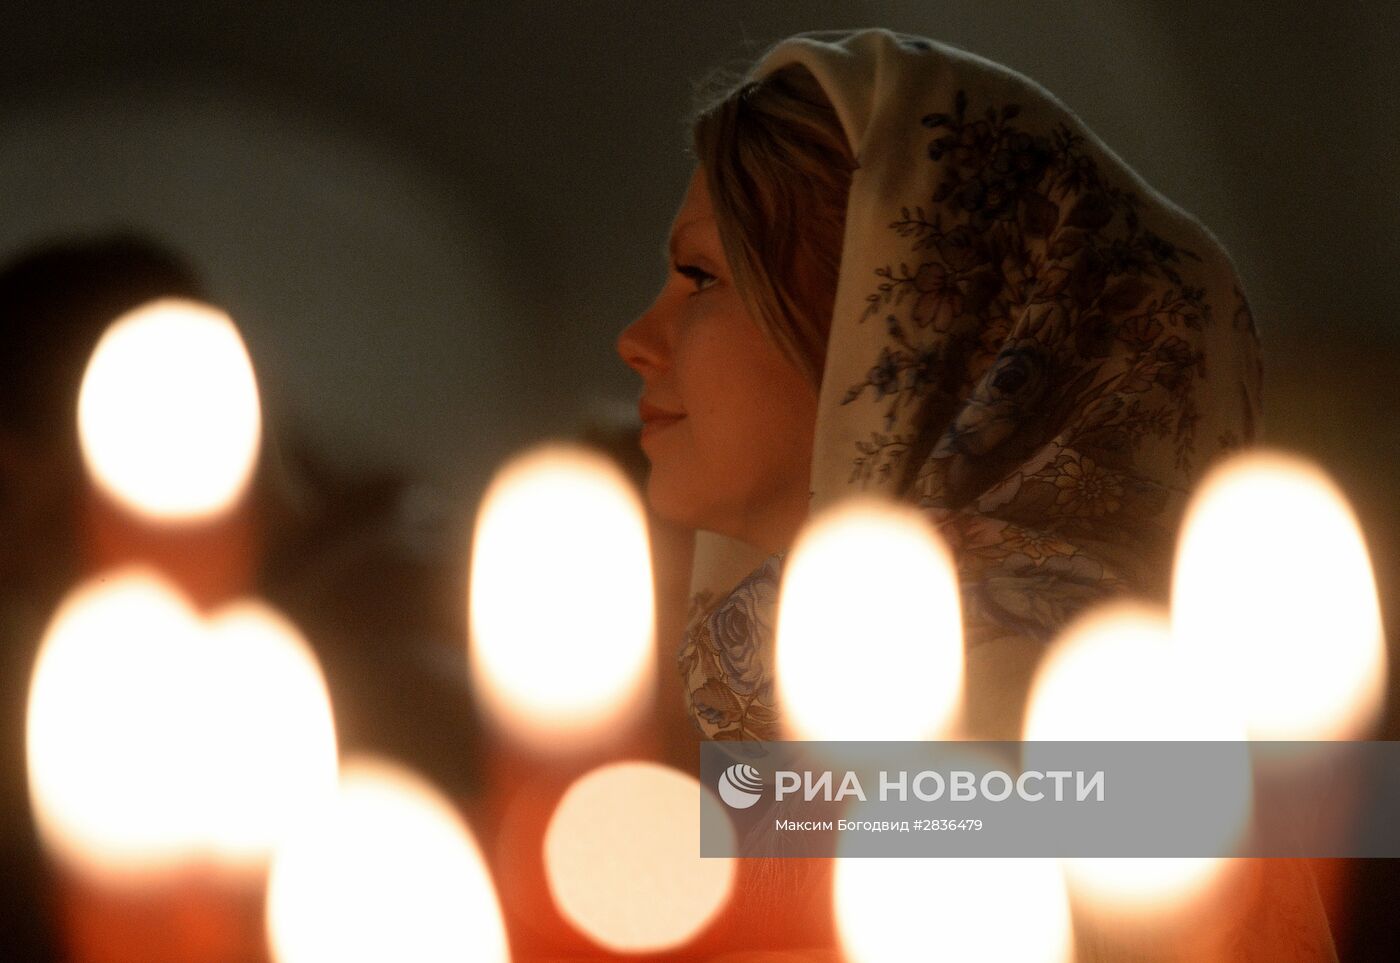 Празднование Пасхи в России